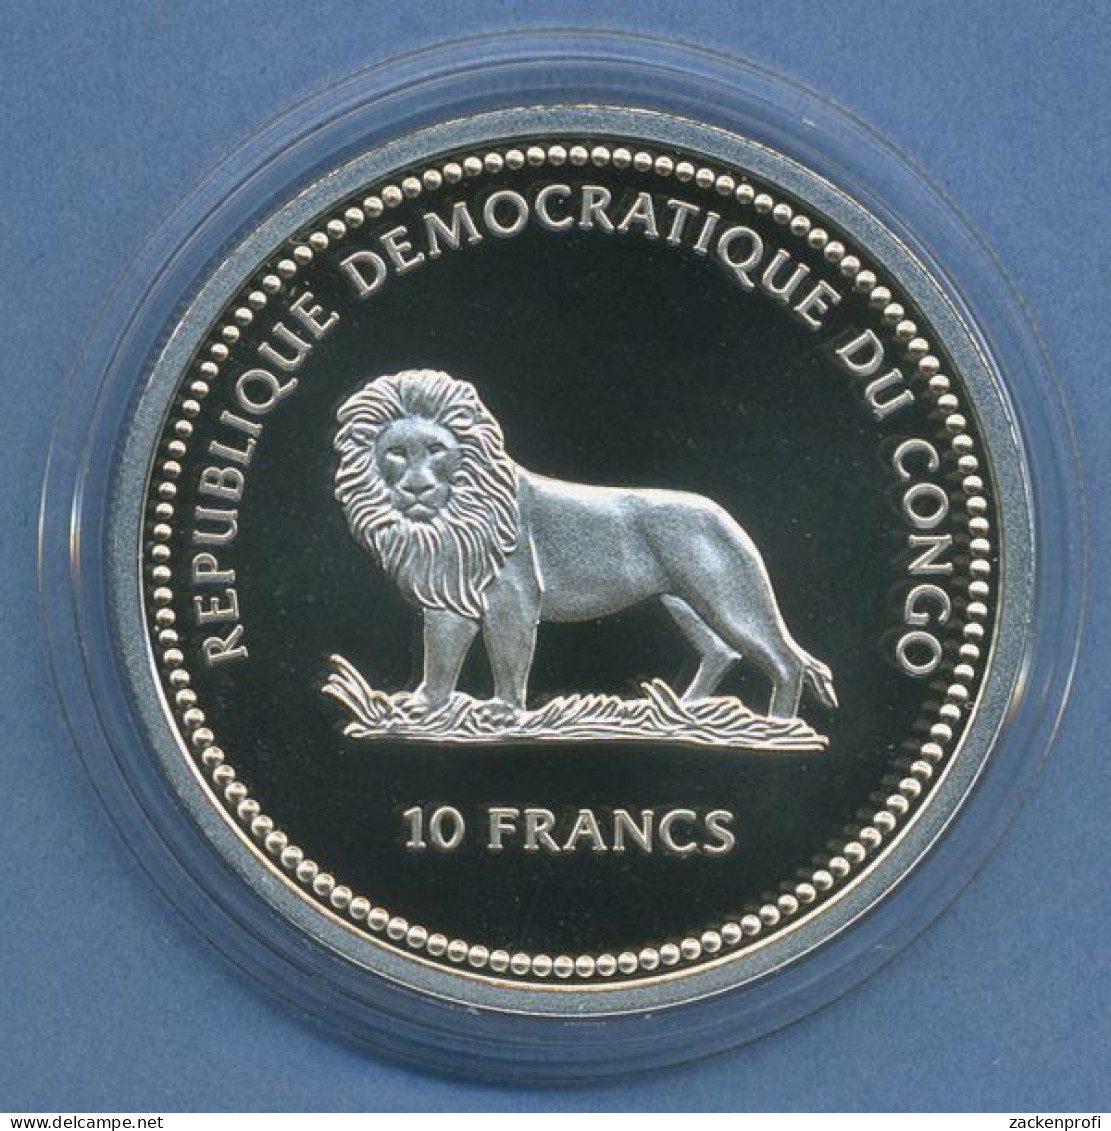 Kongo 10 Franc, 2000 Tierschutz Fische, Silber, Farbig, PP In Kapsel (m4417) - Kongo (Dem. Republik 1998)